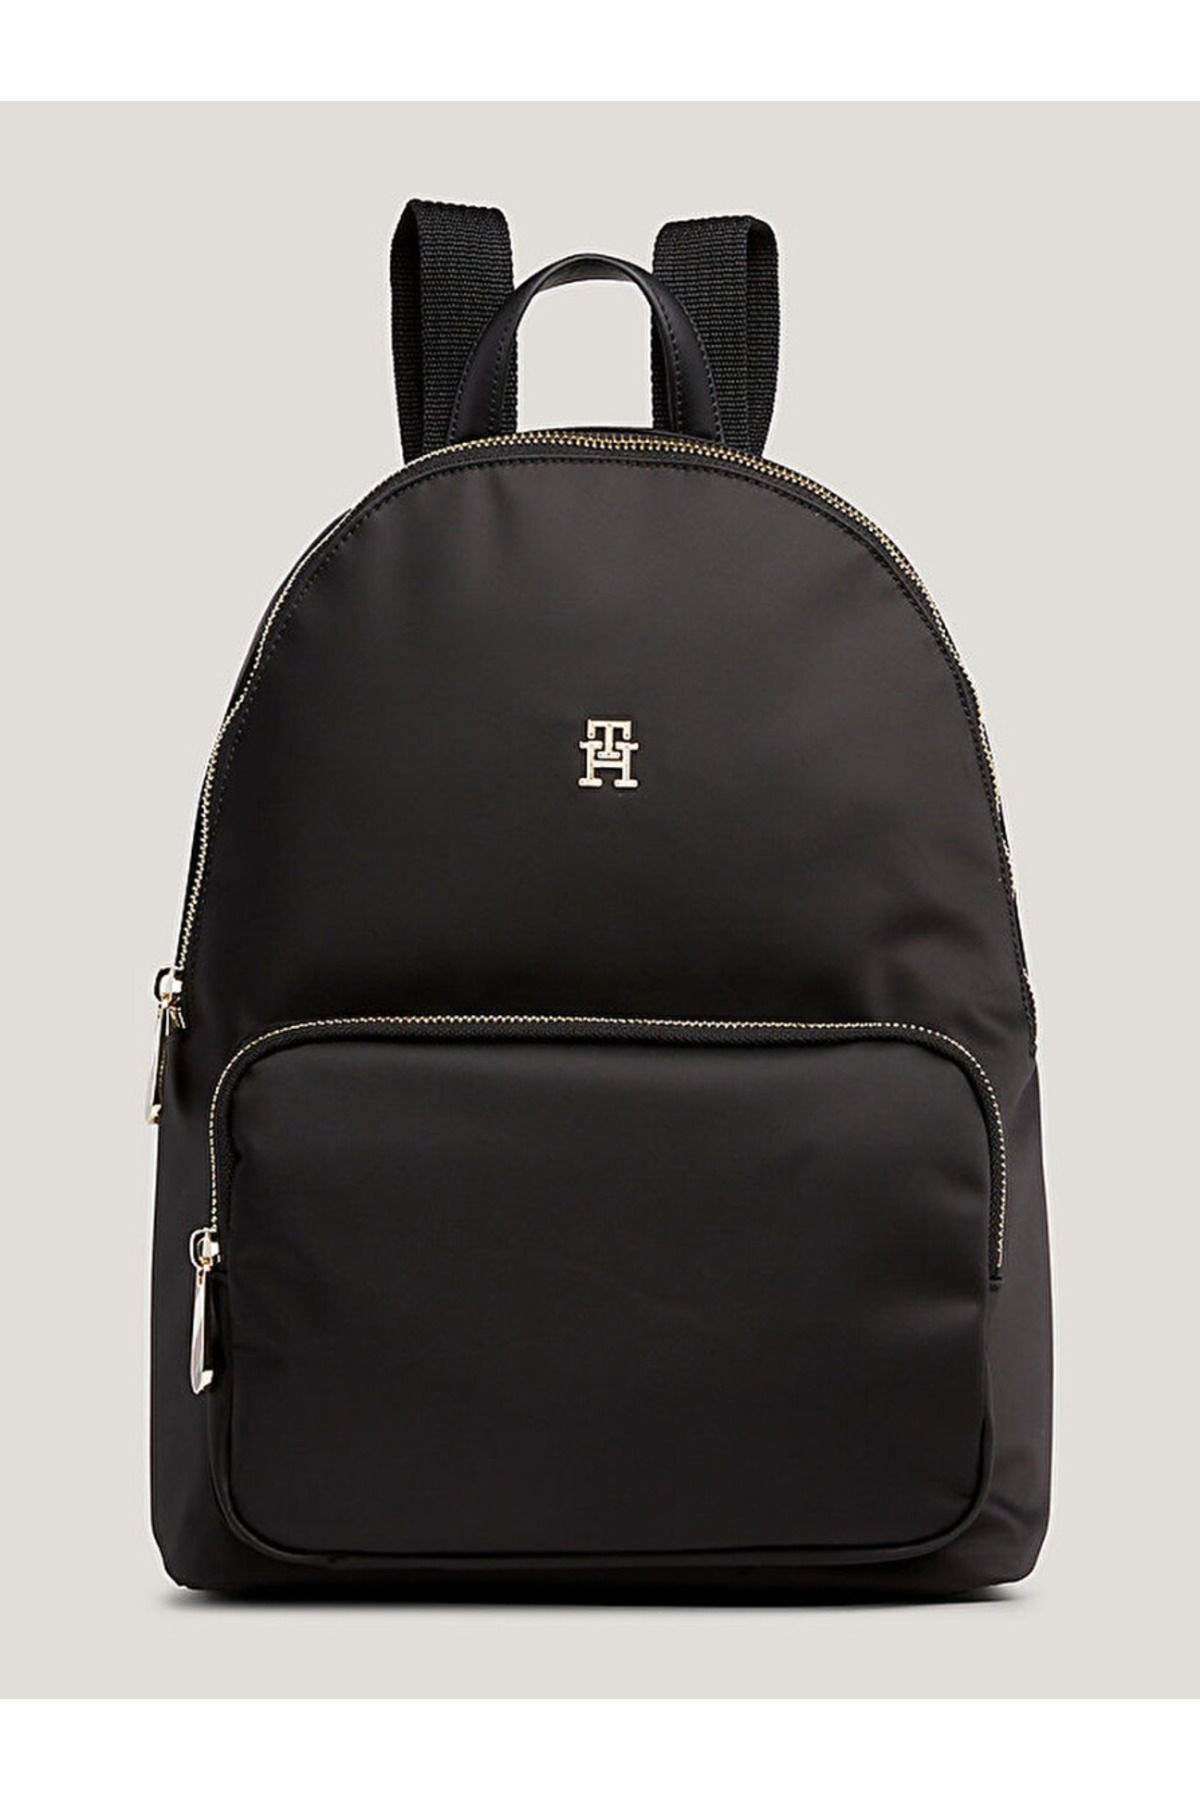 Tommy Hilfiger TH Emblem Plaque Backpack